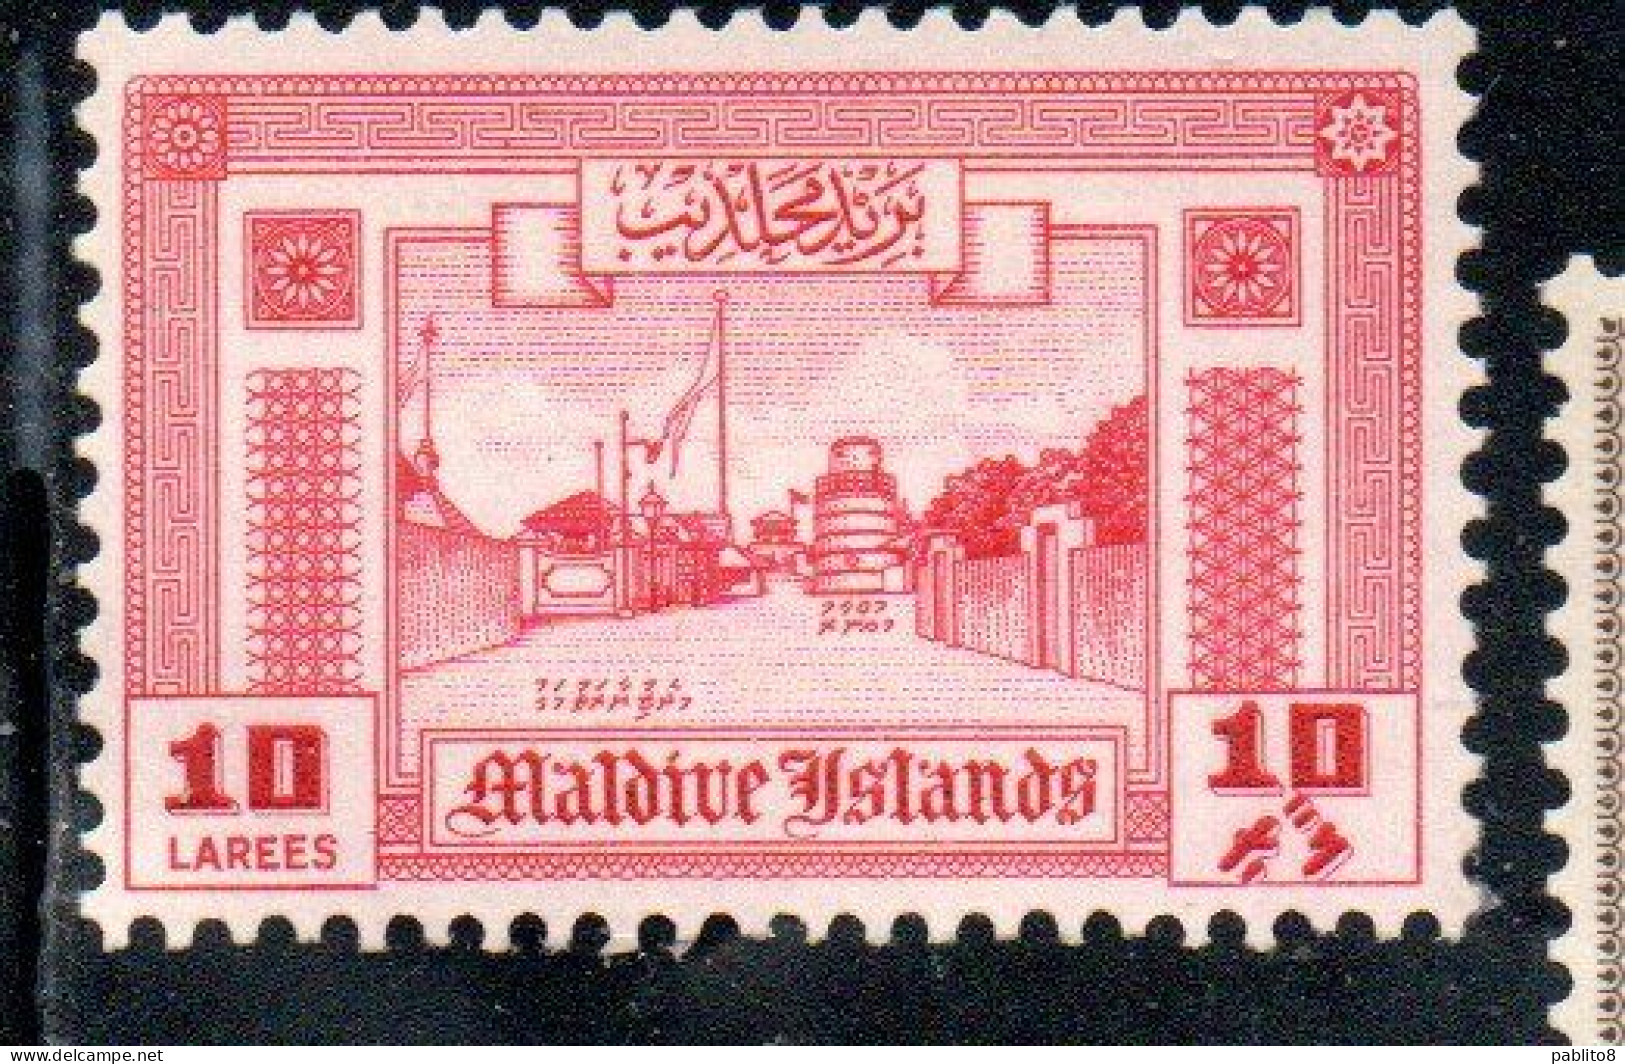 MALDIVES ISLANDS ISOLE MALDIVE BRITISH PRETOCTARATE 1960 ROAD TO MINARET 10L MNH - Maldivas (...-1965)